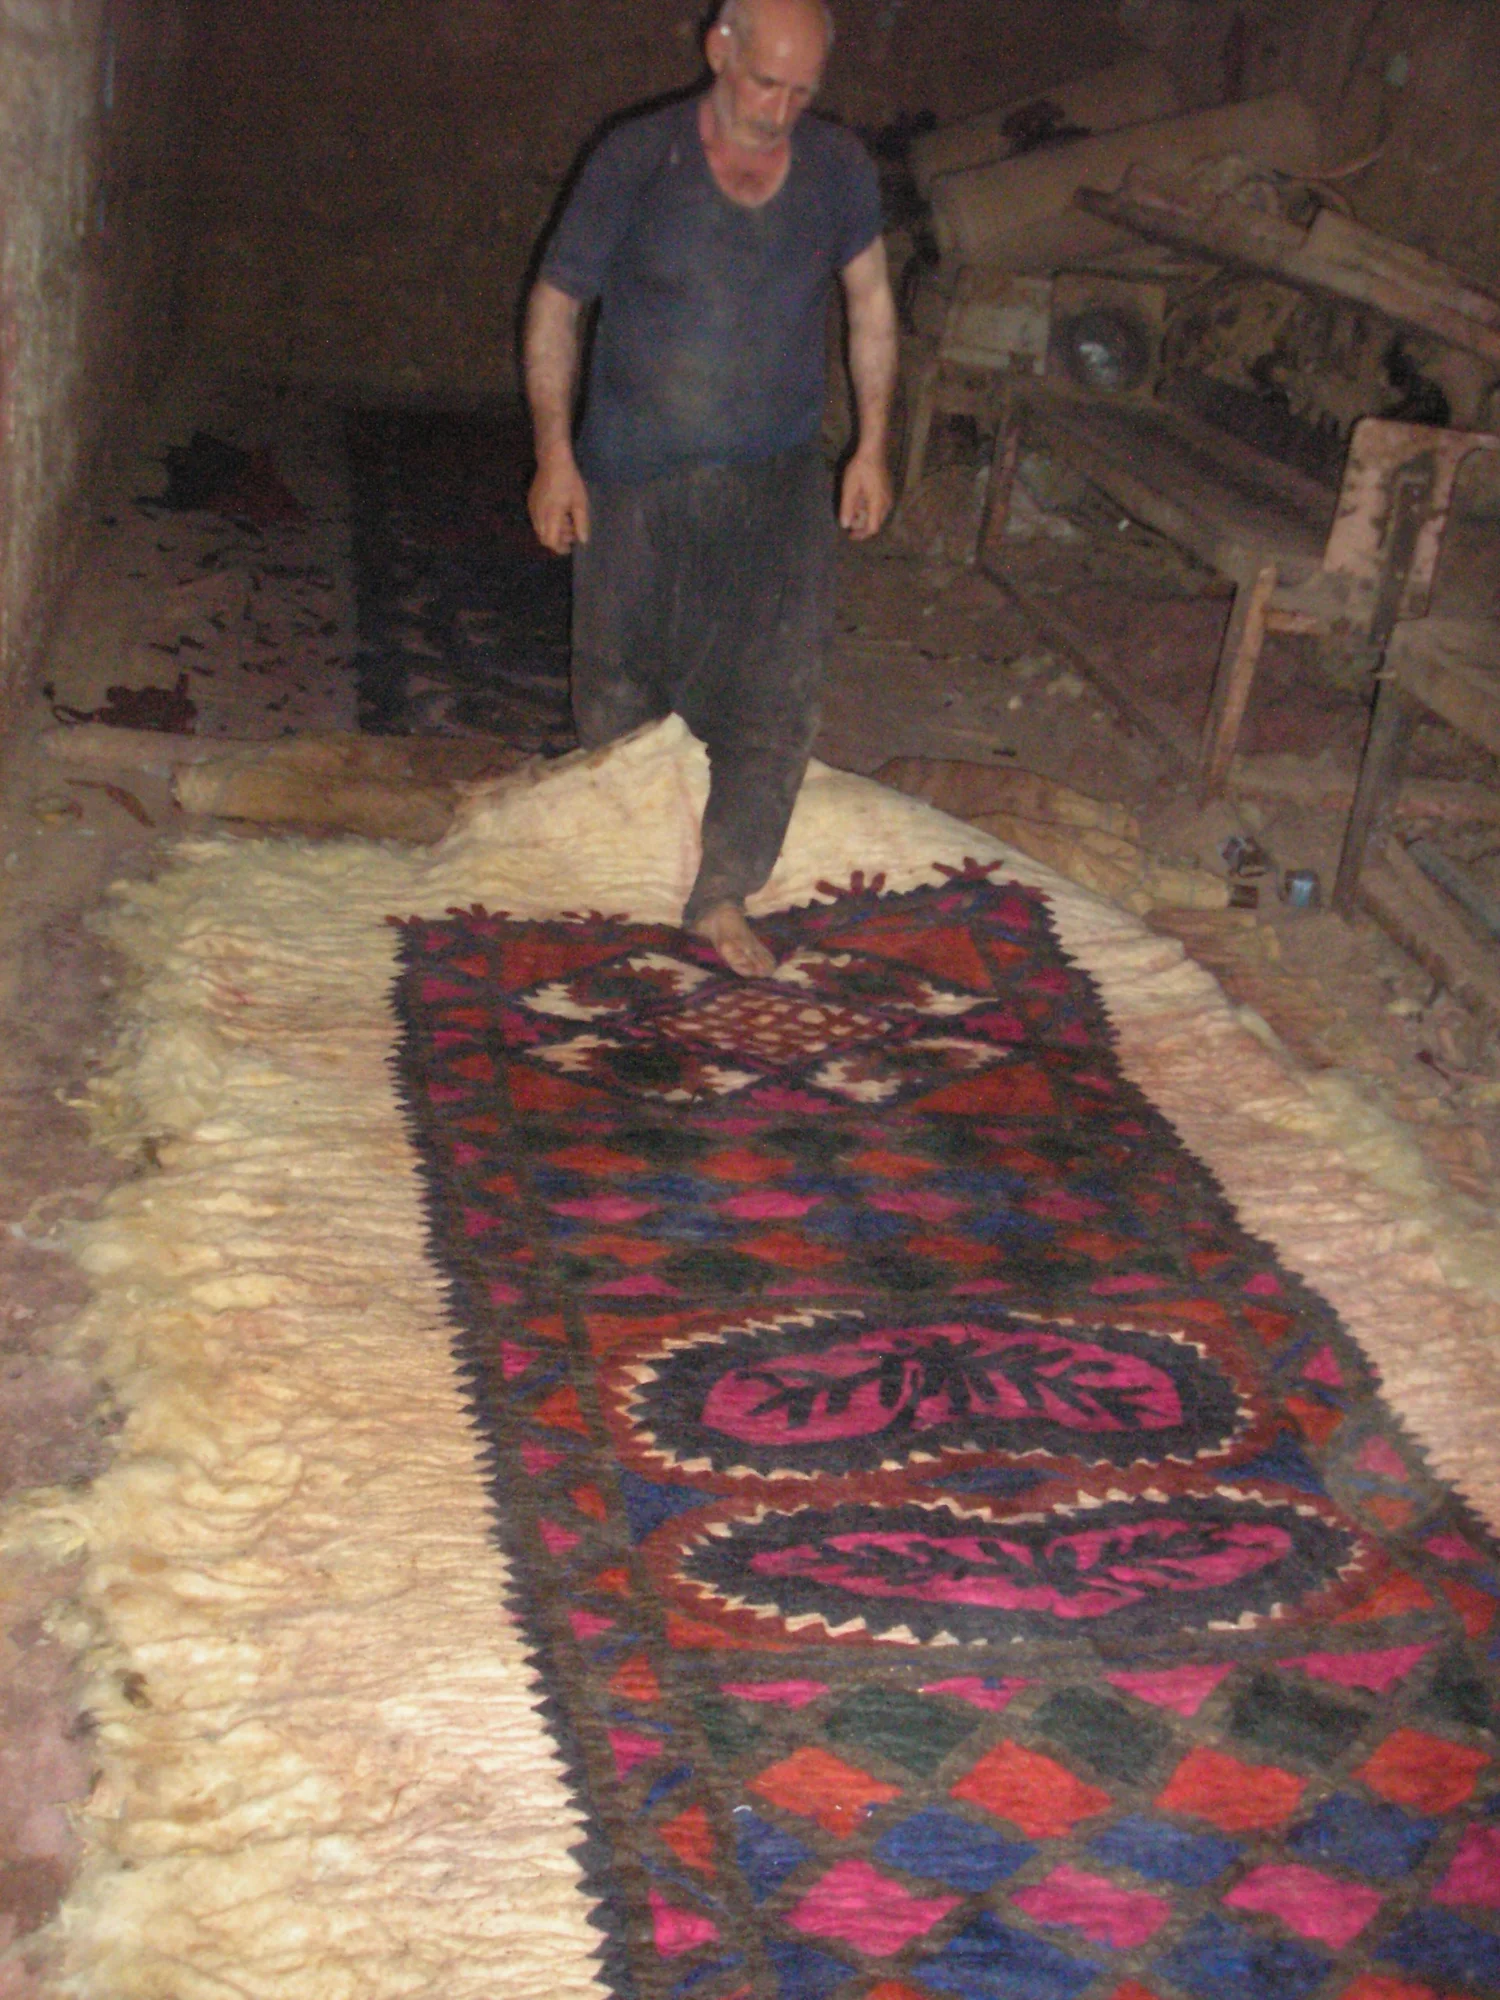 A carpet manufacturer from Al-Bab rolls out a finished felt carpet